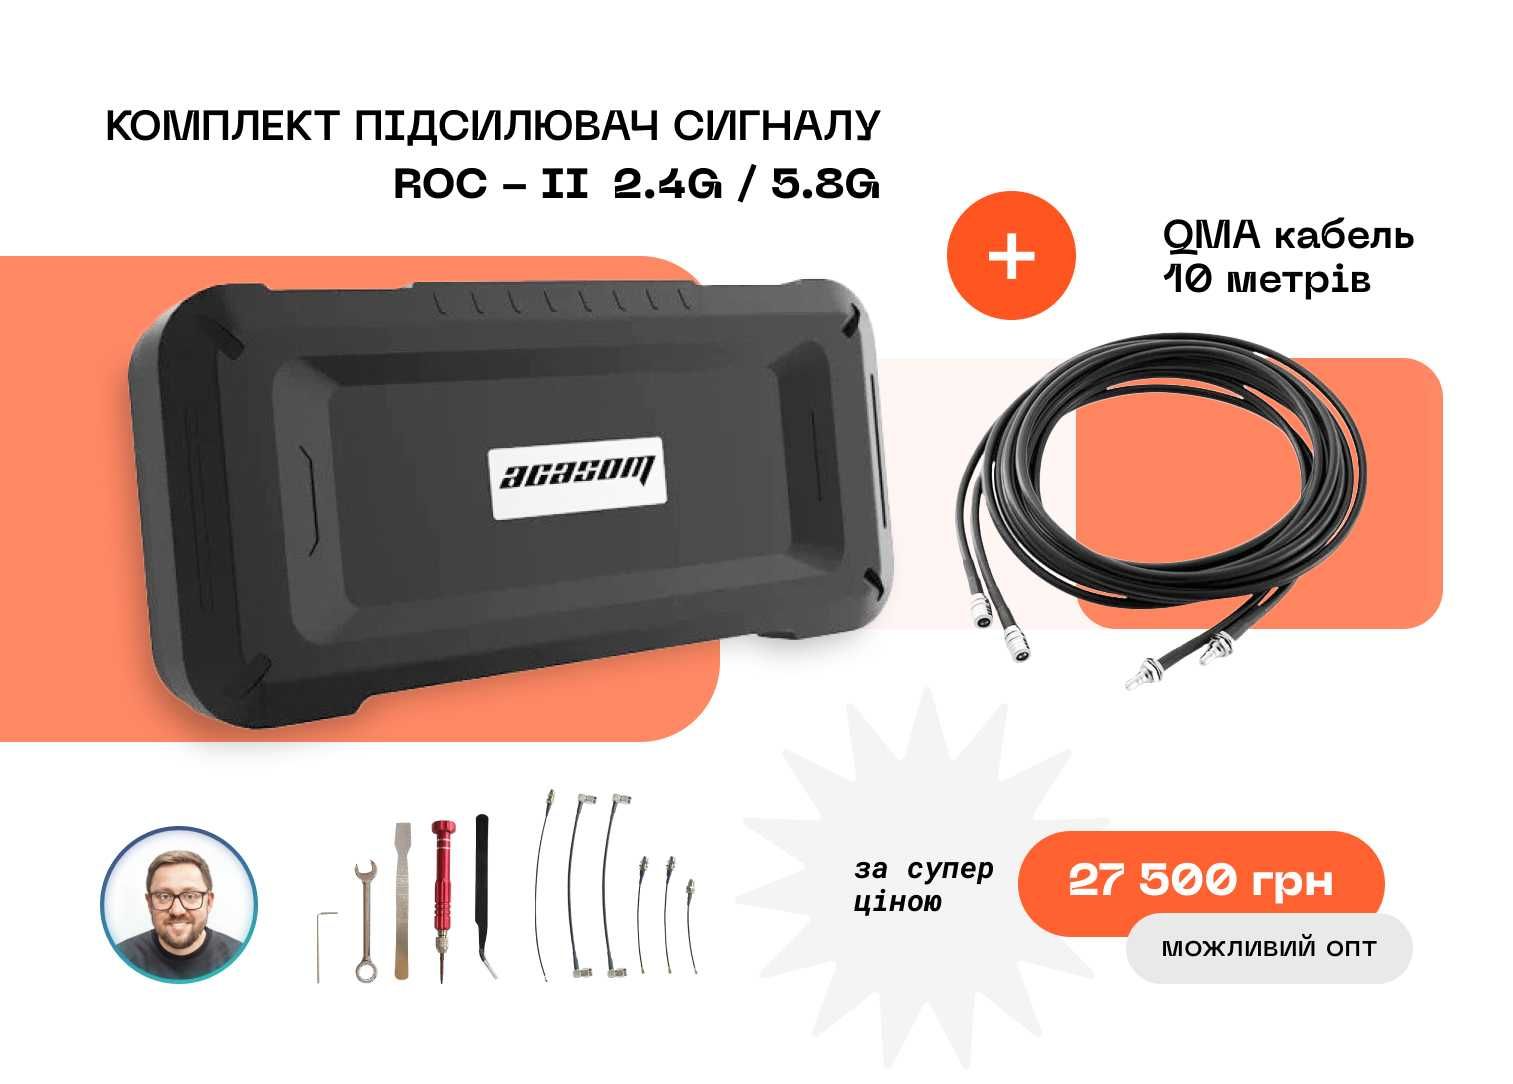 Комплект підсилювач сигналу ACASOM ROC-II 2.4G/5.8G + QMA 10 метрів